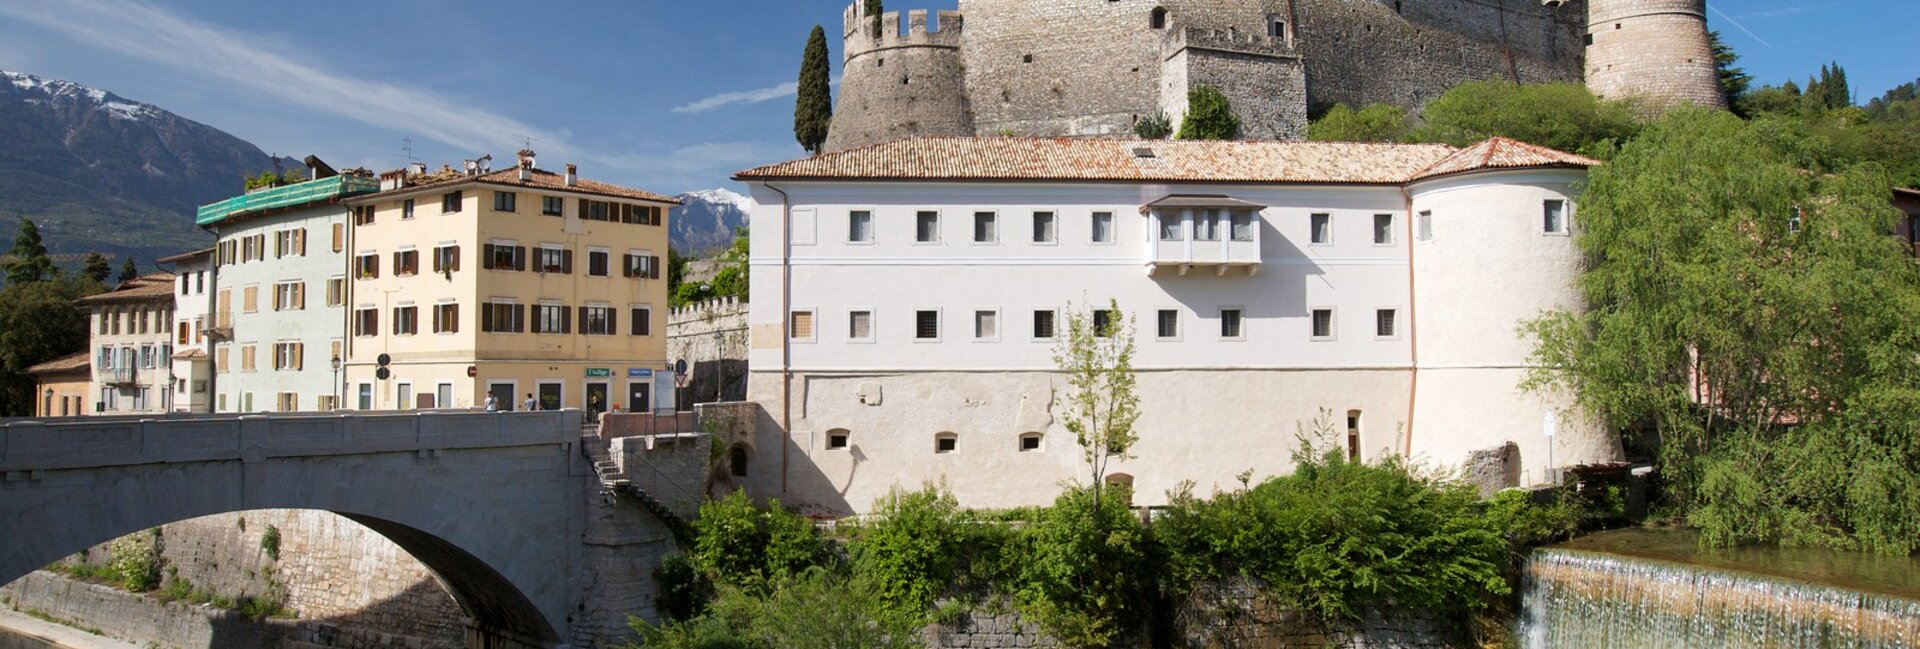 Rovereto Castle